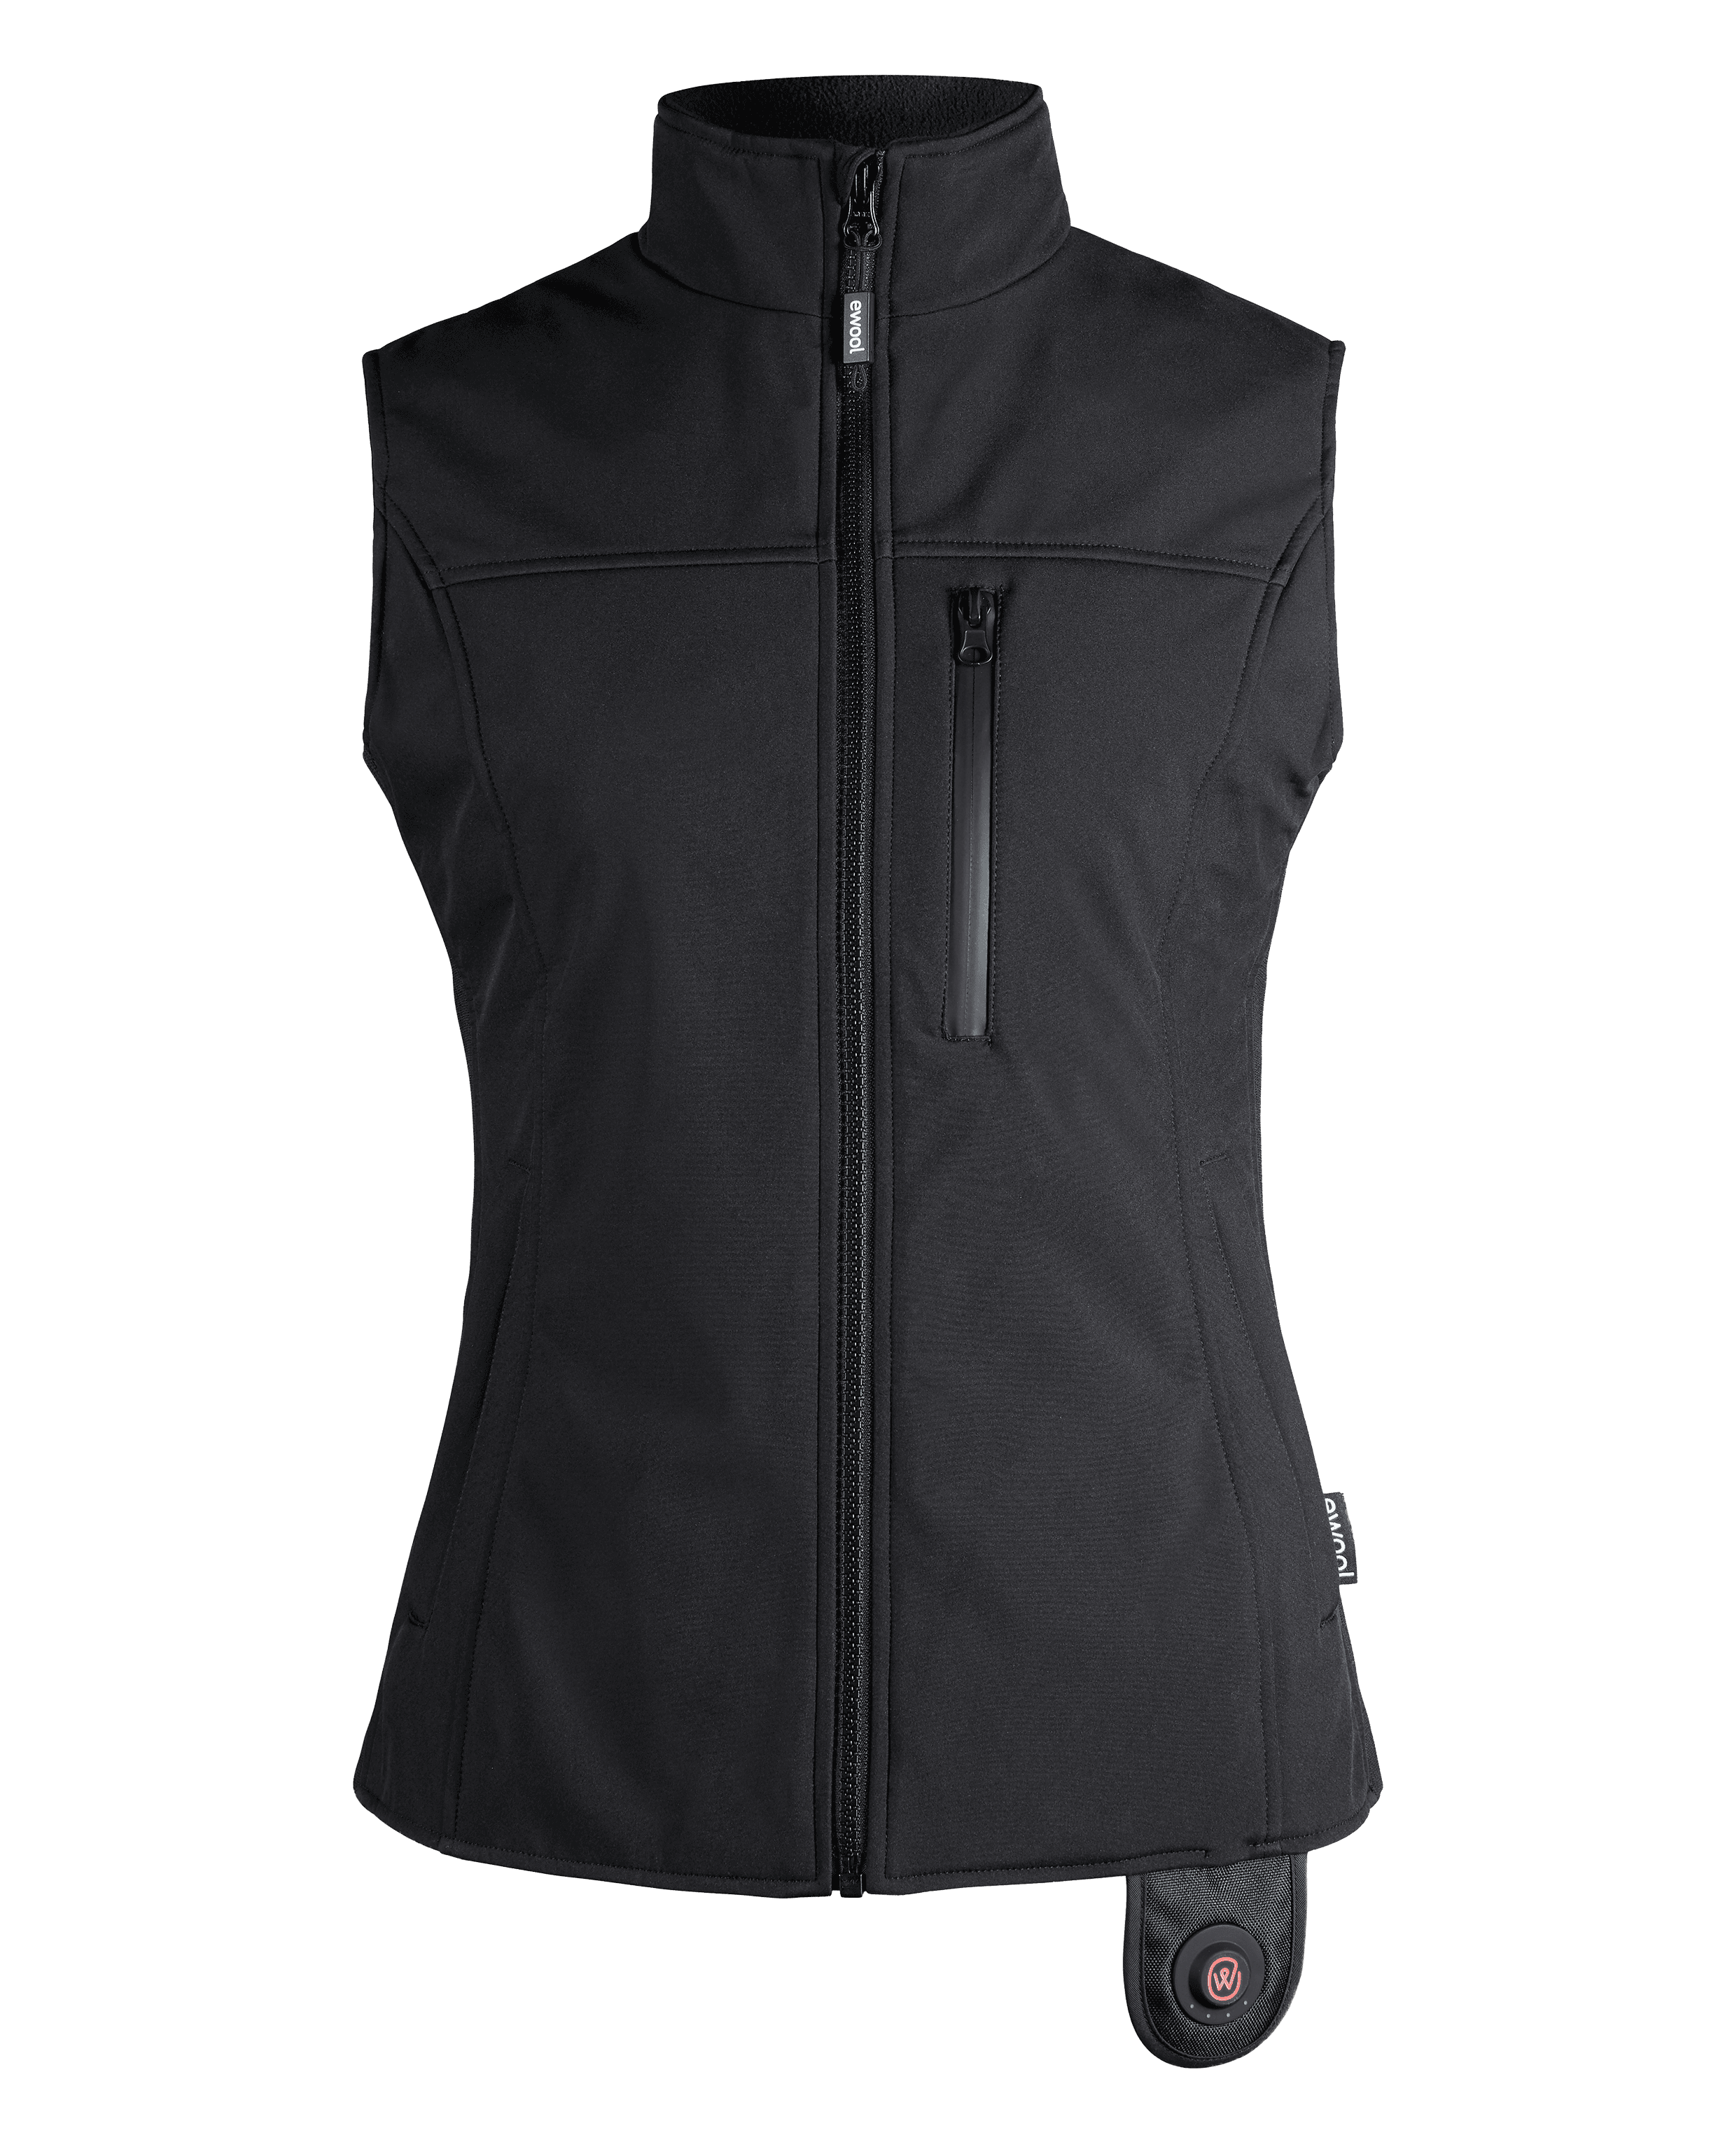 PRO Heated Vest for Women (Final Sale)